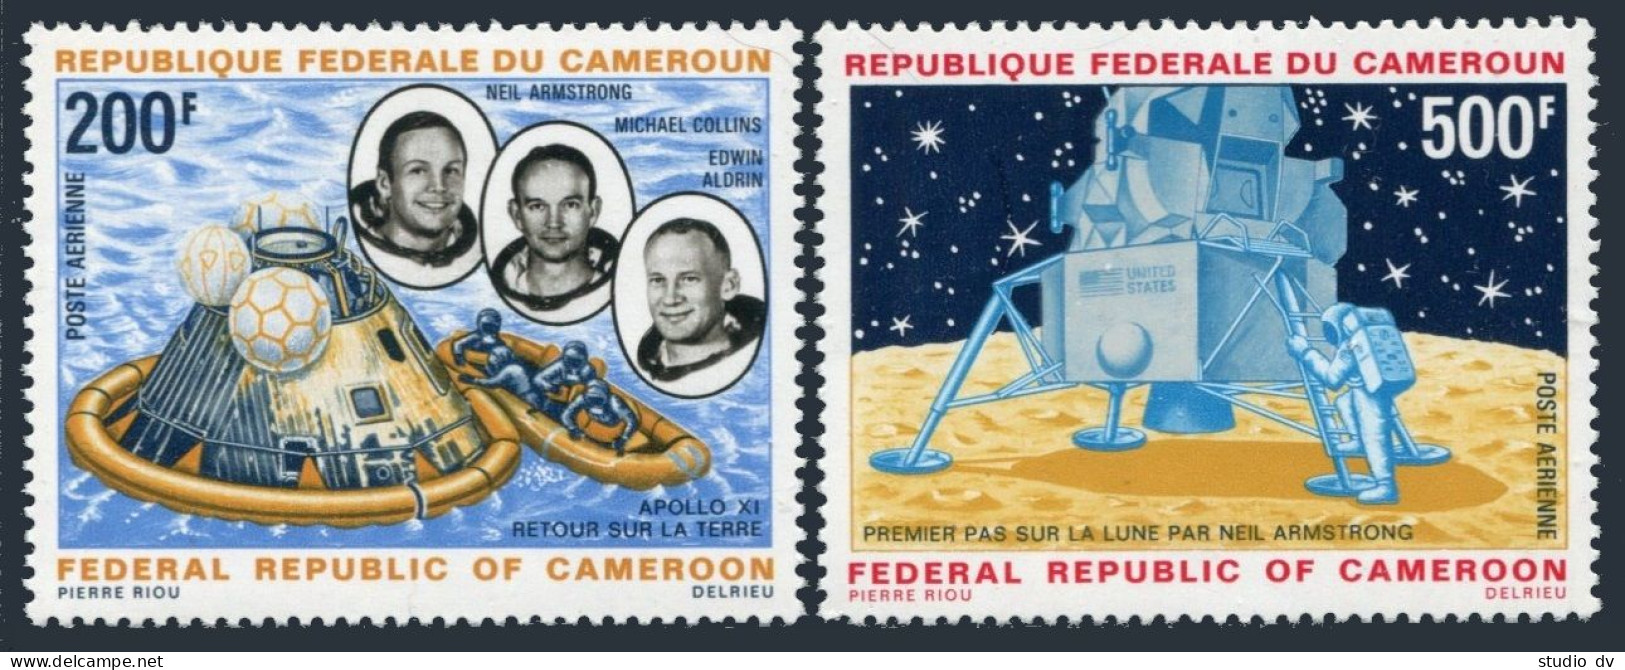 Cameroun C135-C136, MNH. Michel 600-601. Moon, 1969. Armstrong, Collins, Aldrin. - Cameroun (1960-...)